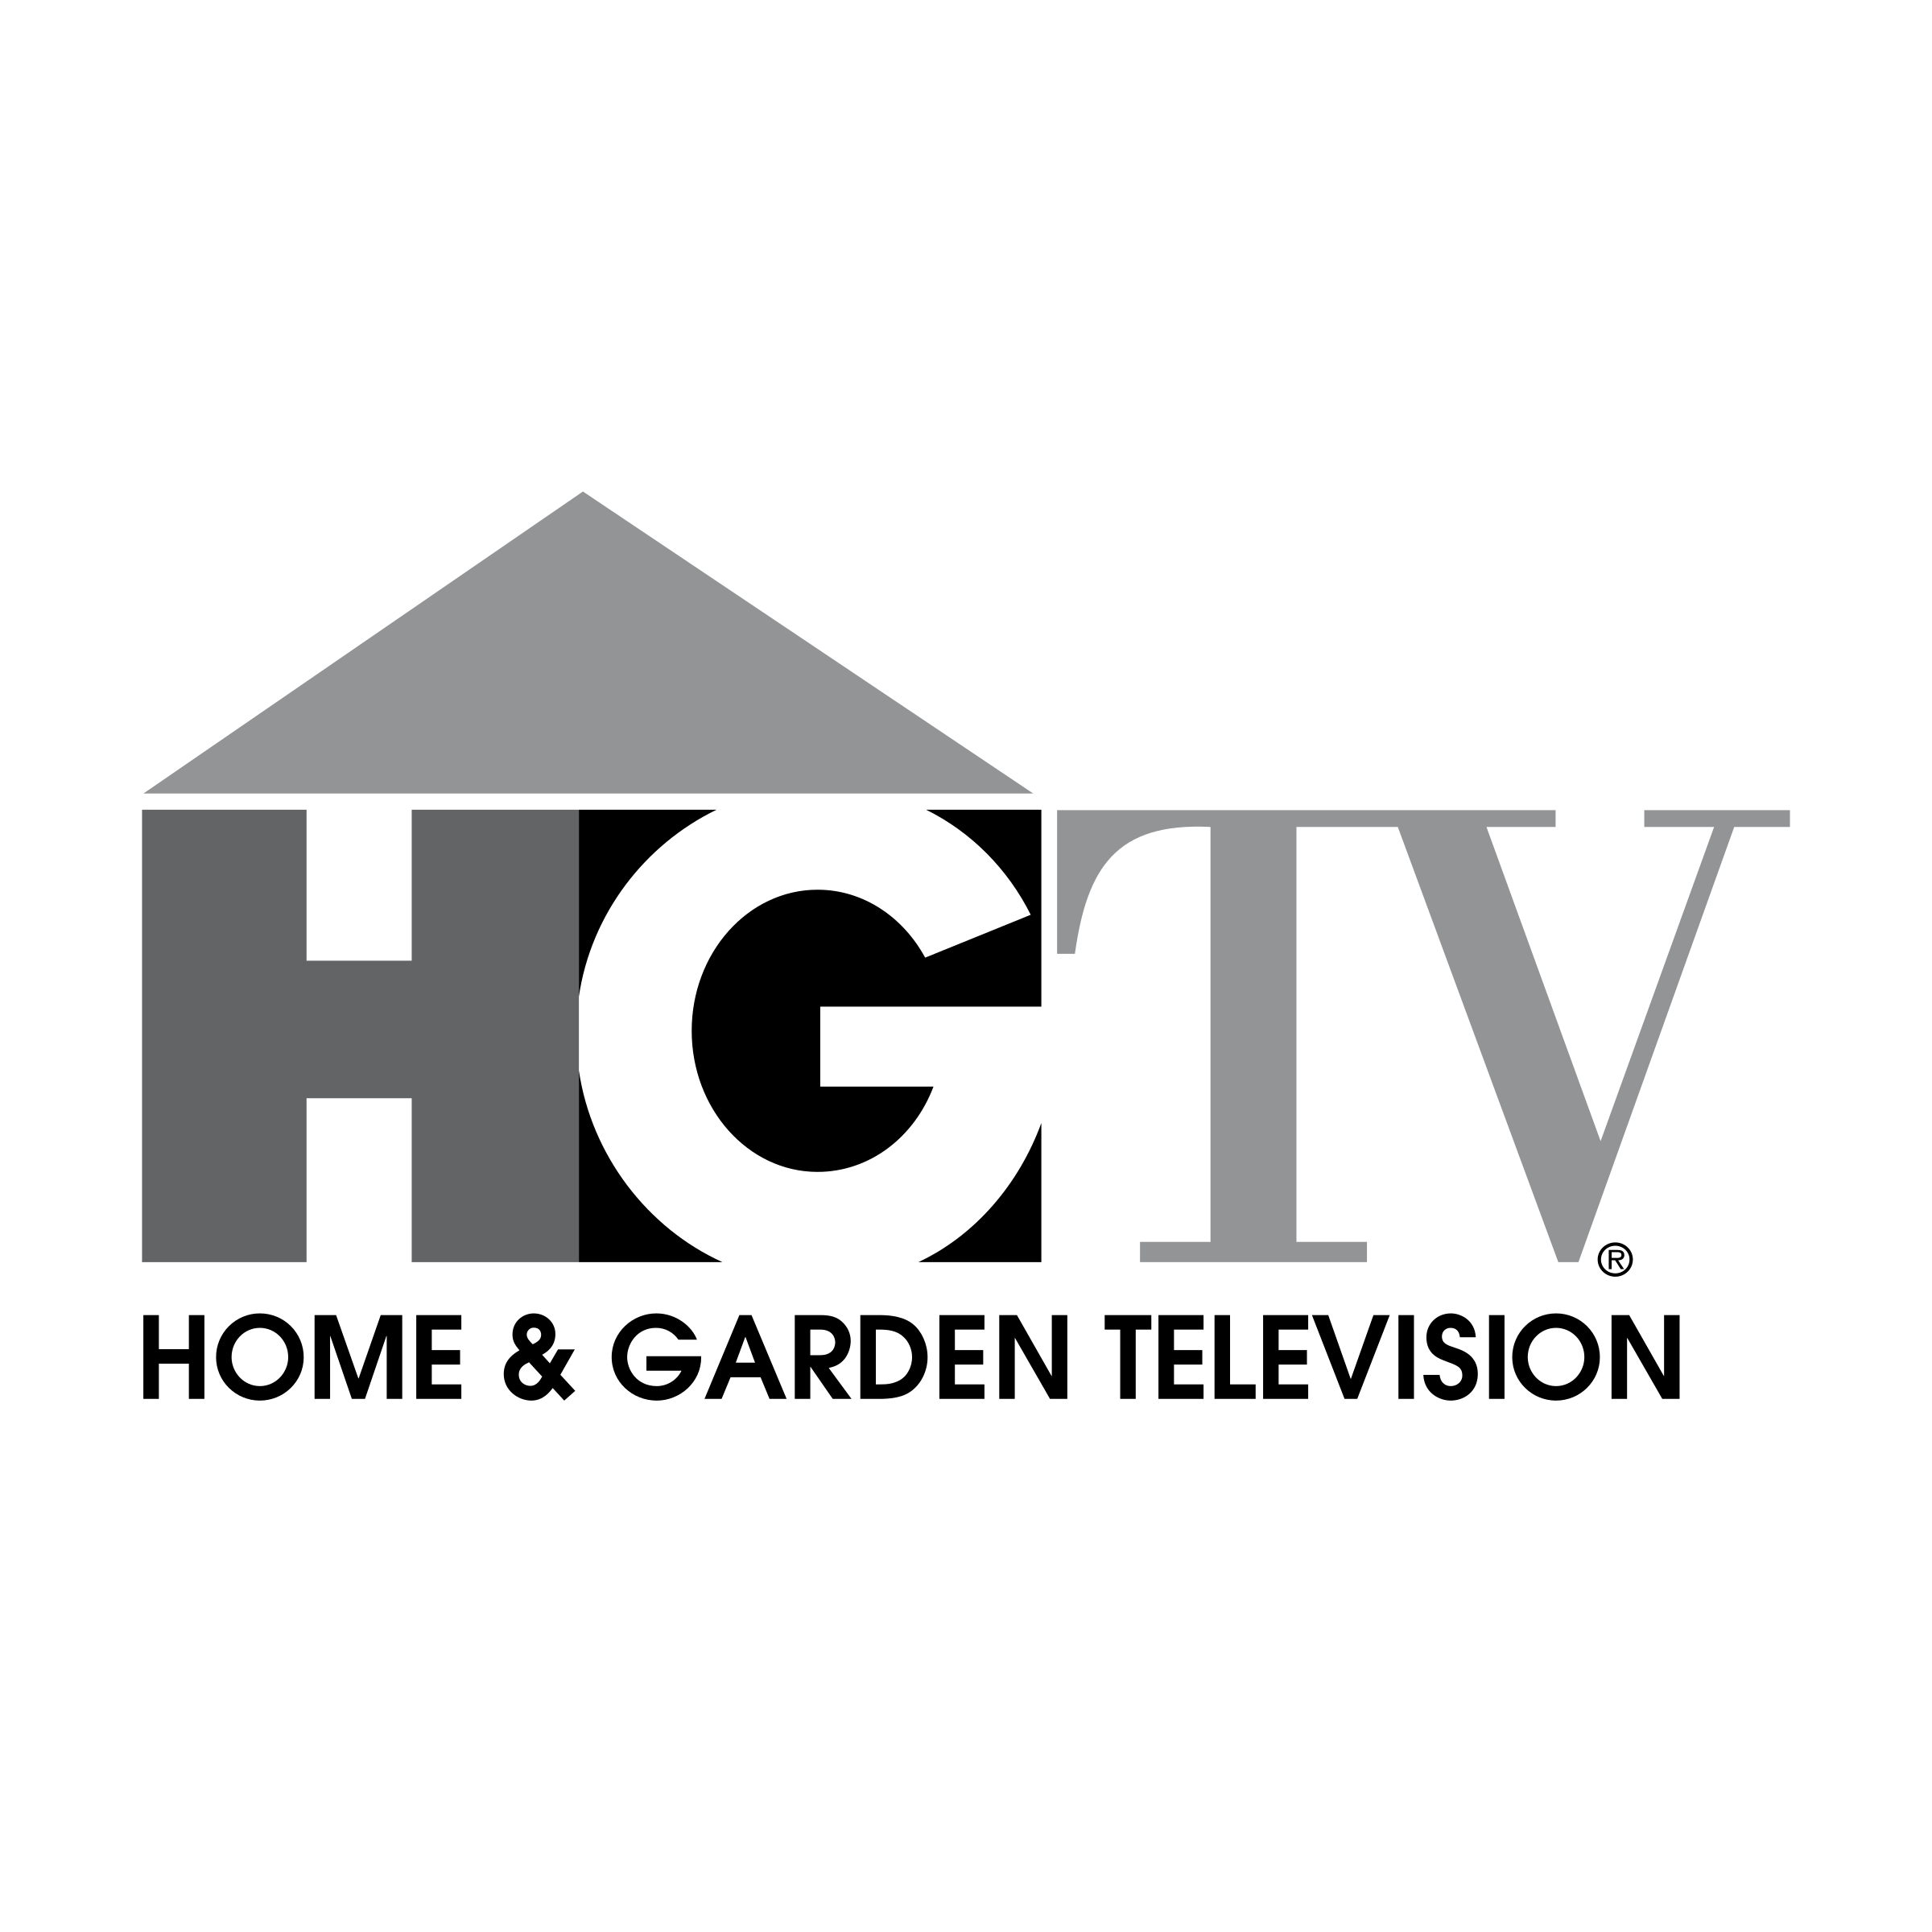 Hgtv.com Logo - HGTV Logo PNG Transparent & SVG Vector - Freebie Supply